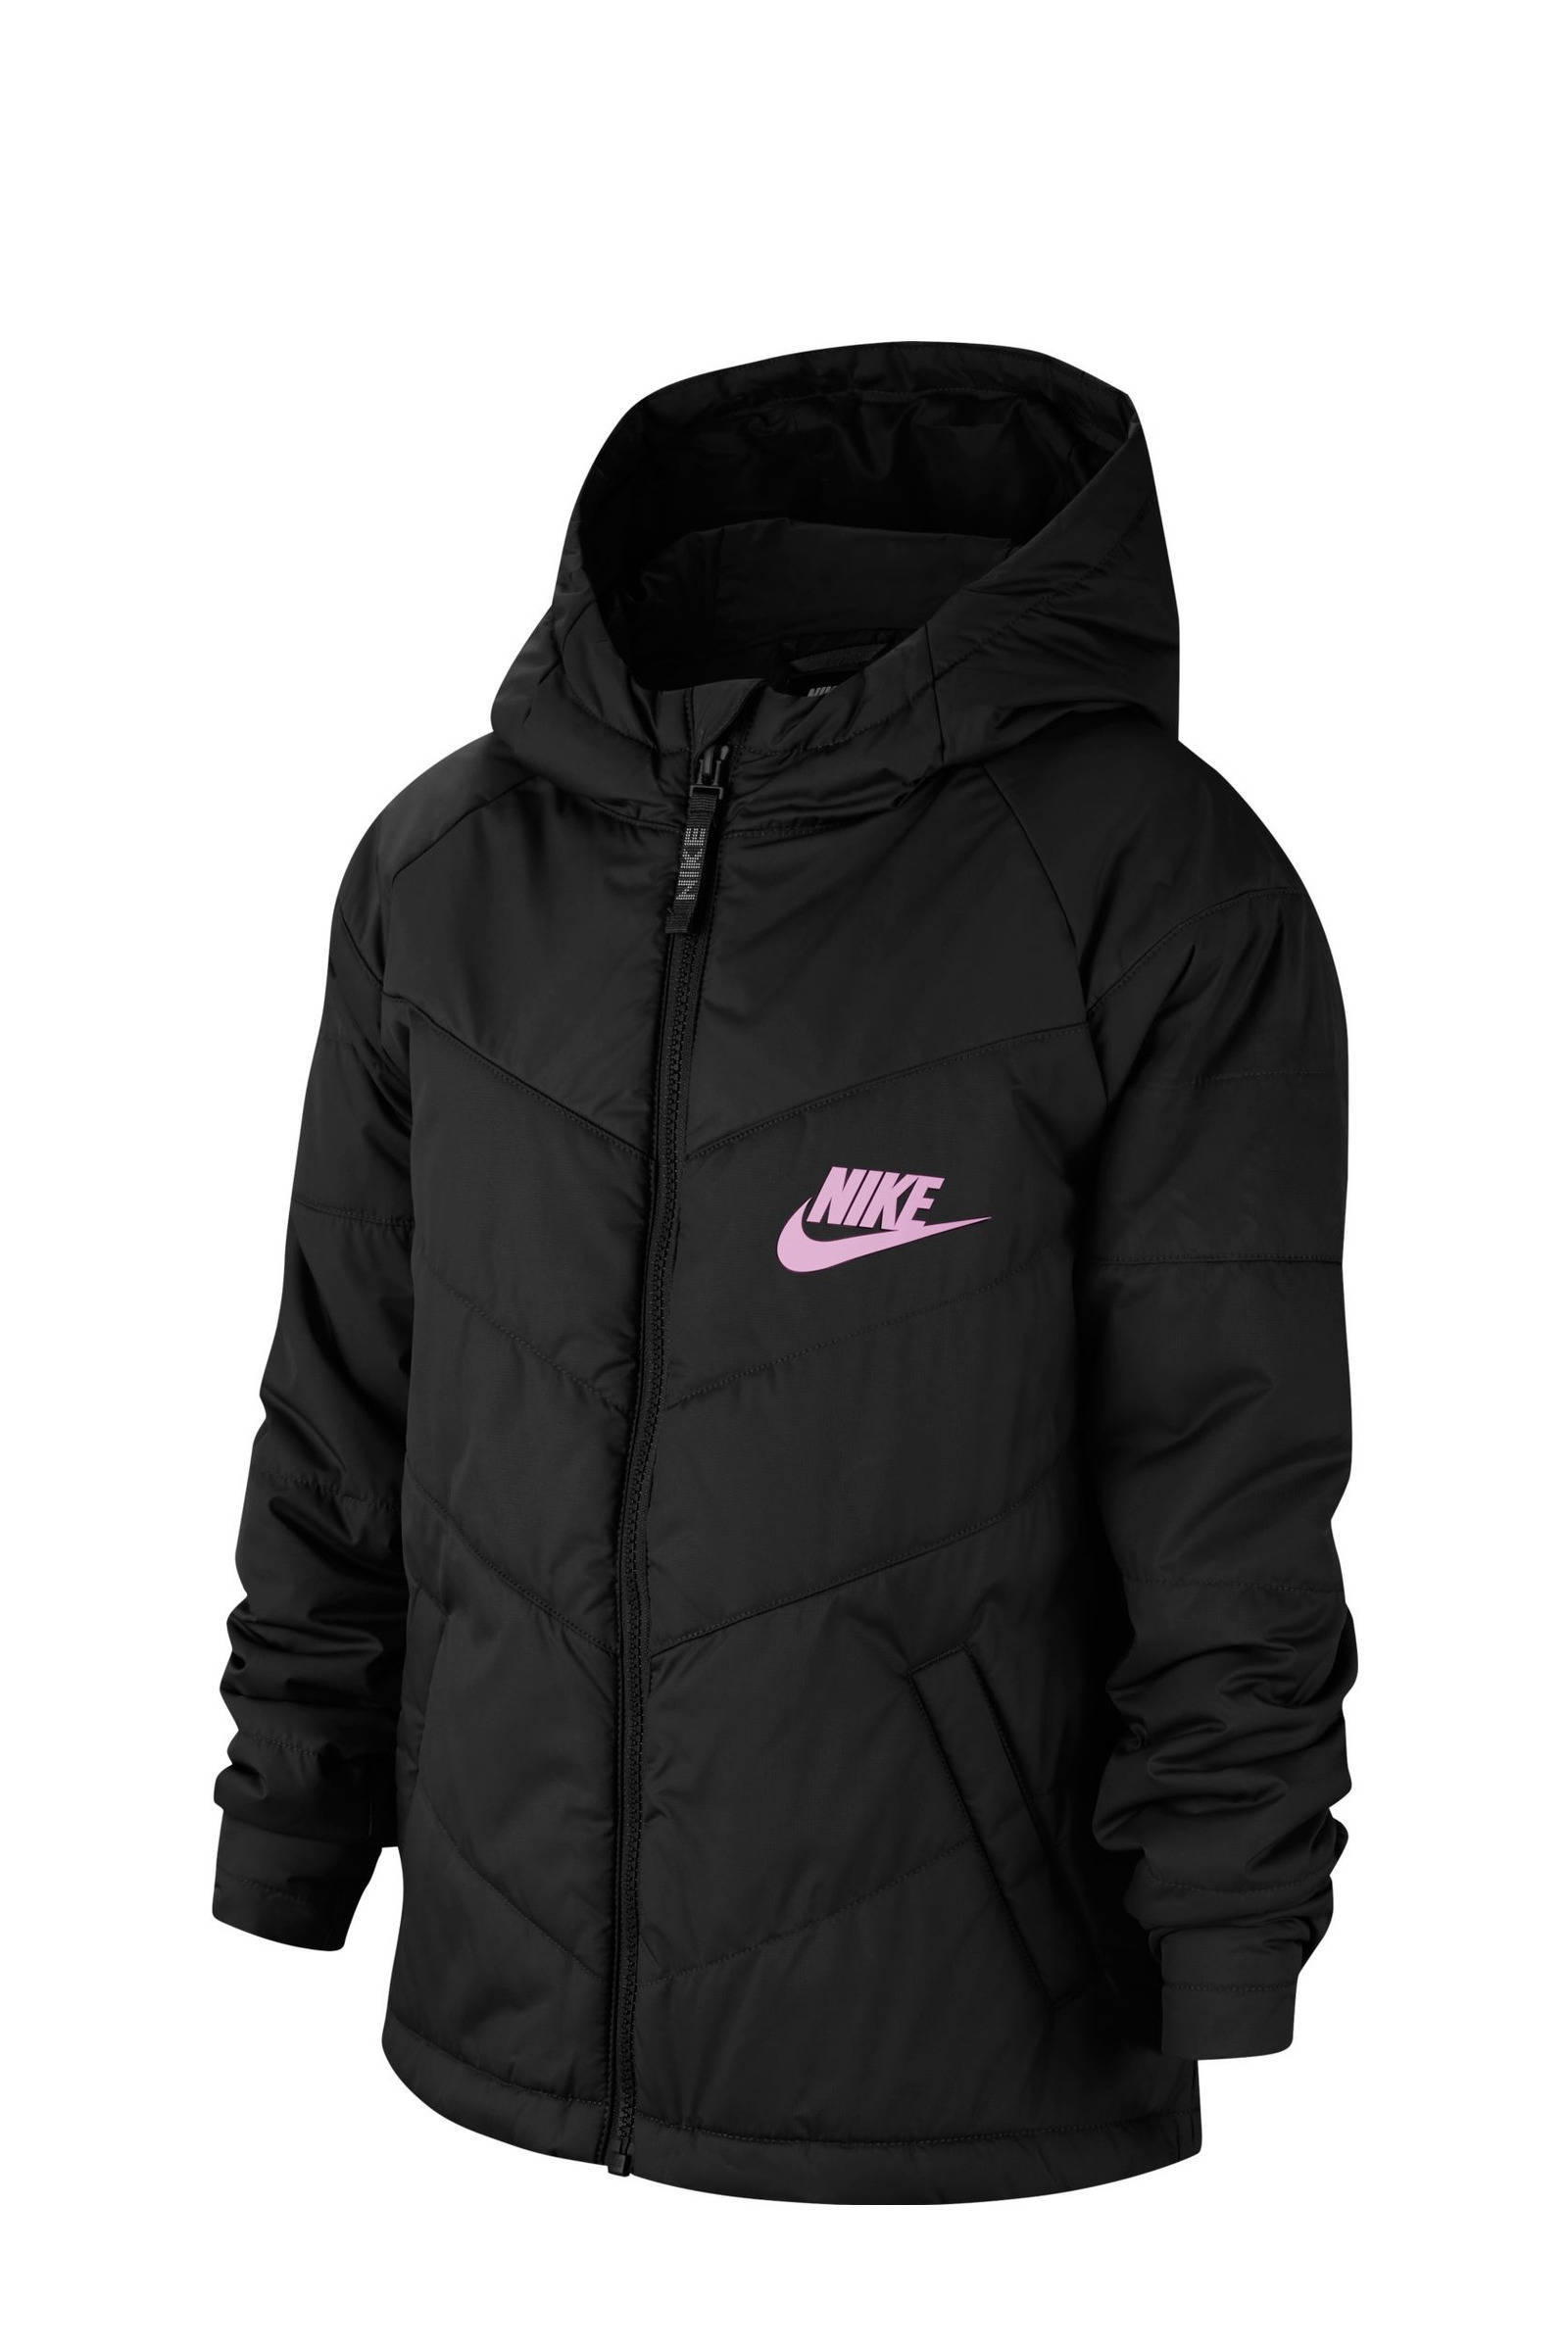 Nike gewatteerde winterjas zwart online kopen